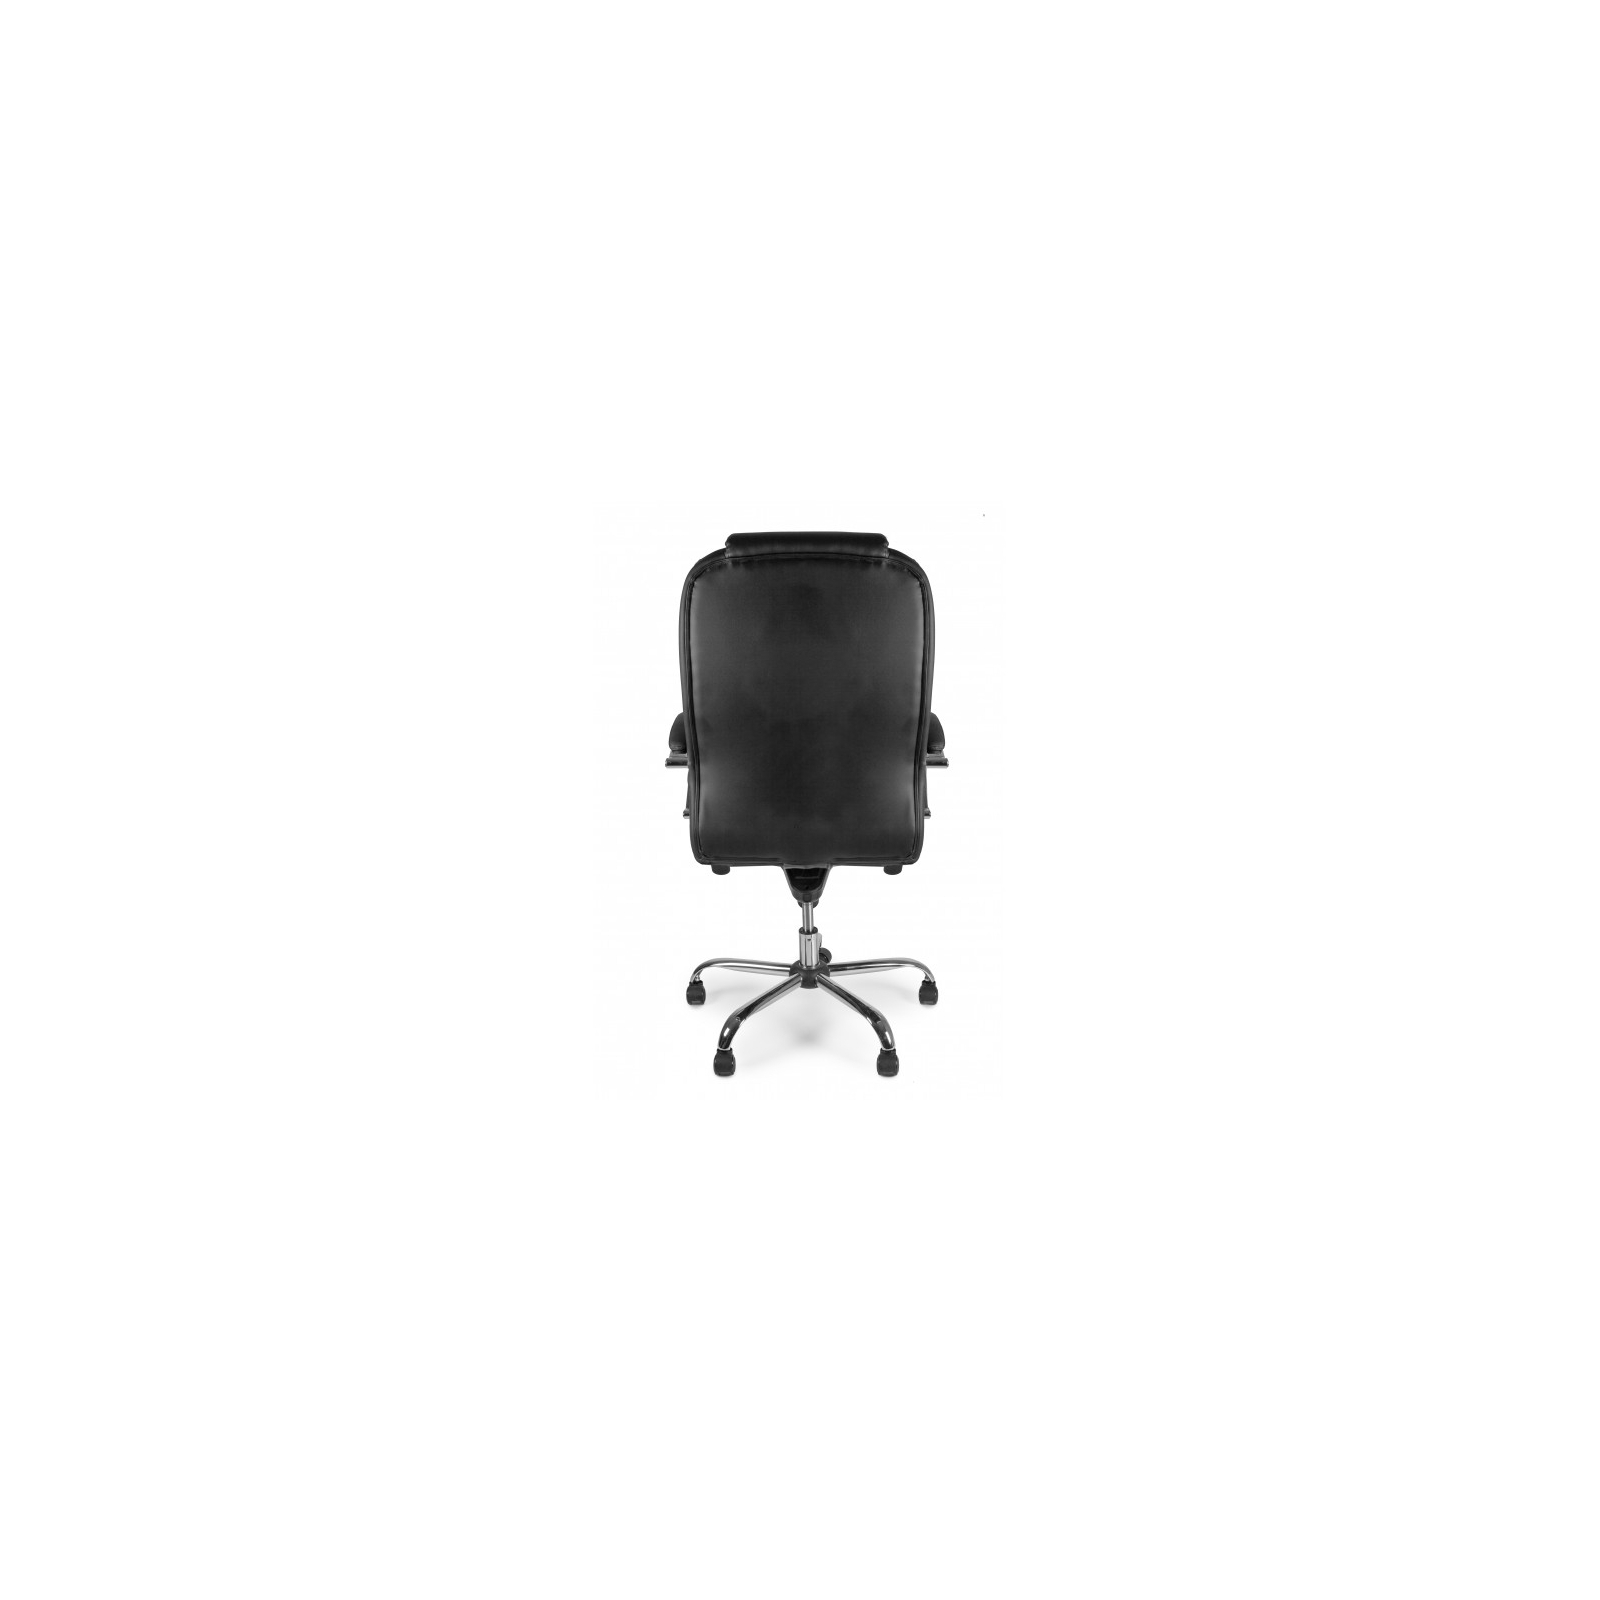 Офисное кресло Barsky Soft Leather MultiBlock Сhrom (Soft-05) изображение 5